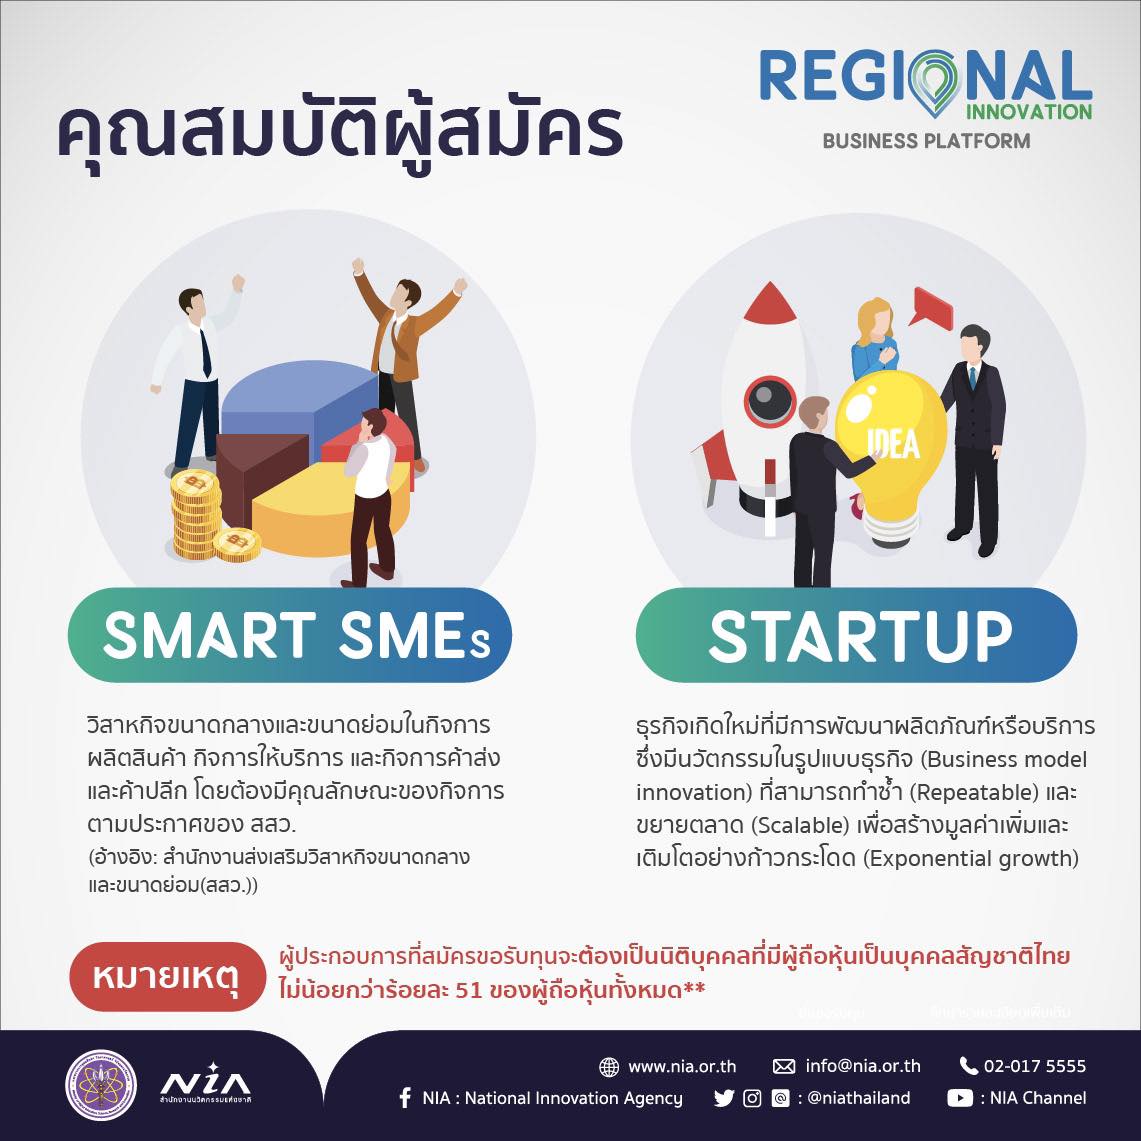 Regional Innovation Business Platform_2.jpg